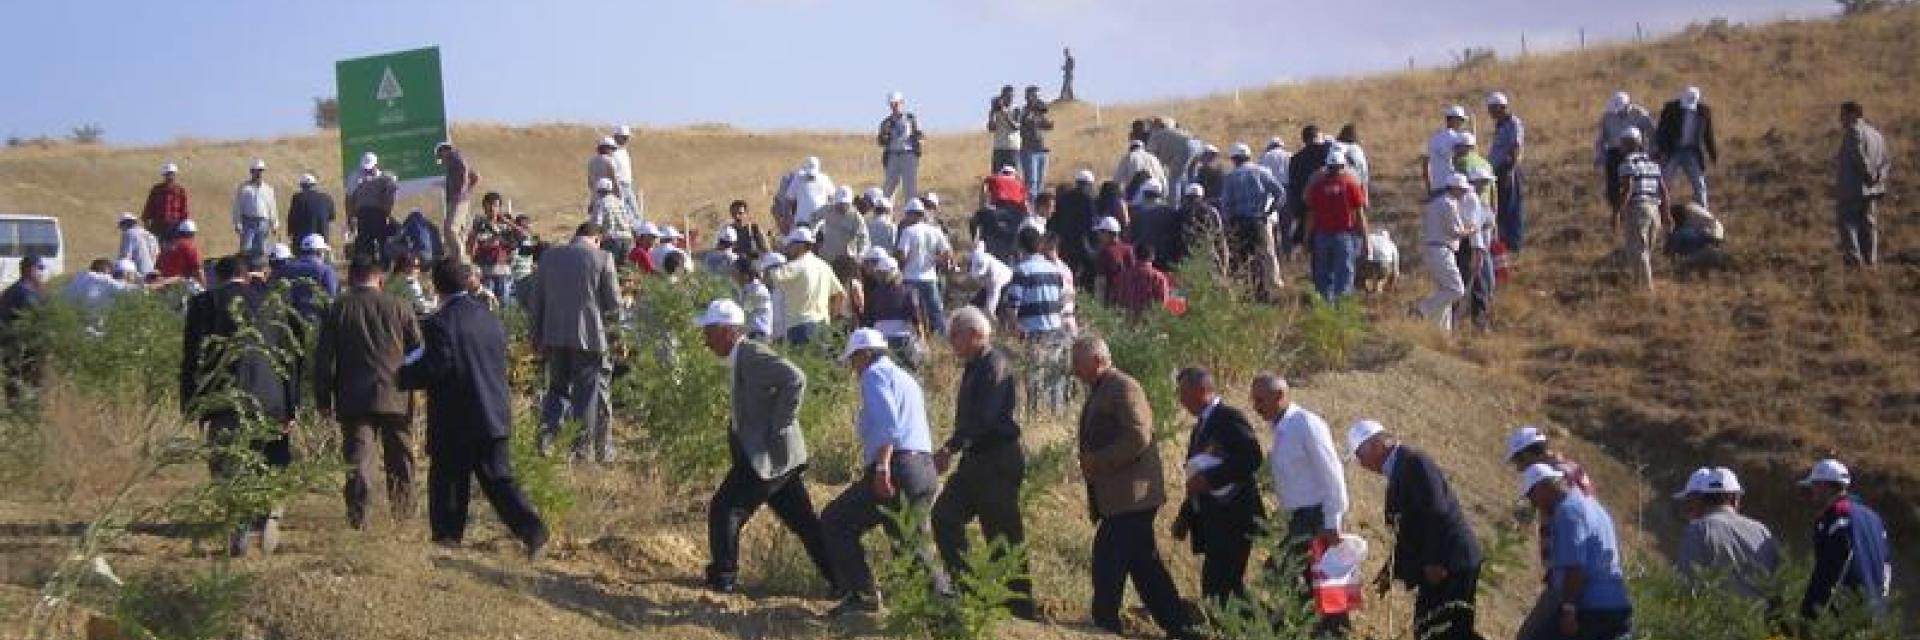 Sivas/ Divriği - 2005